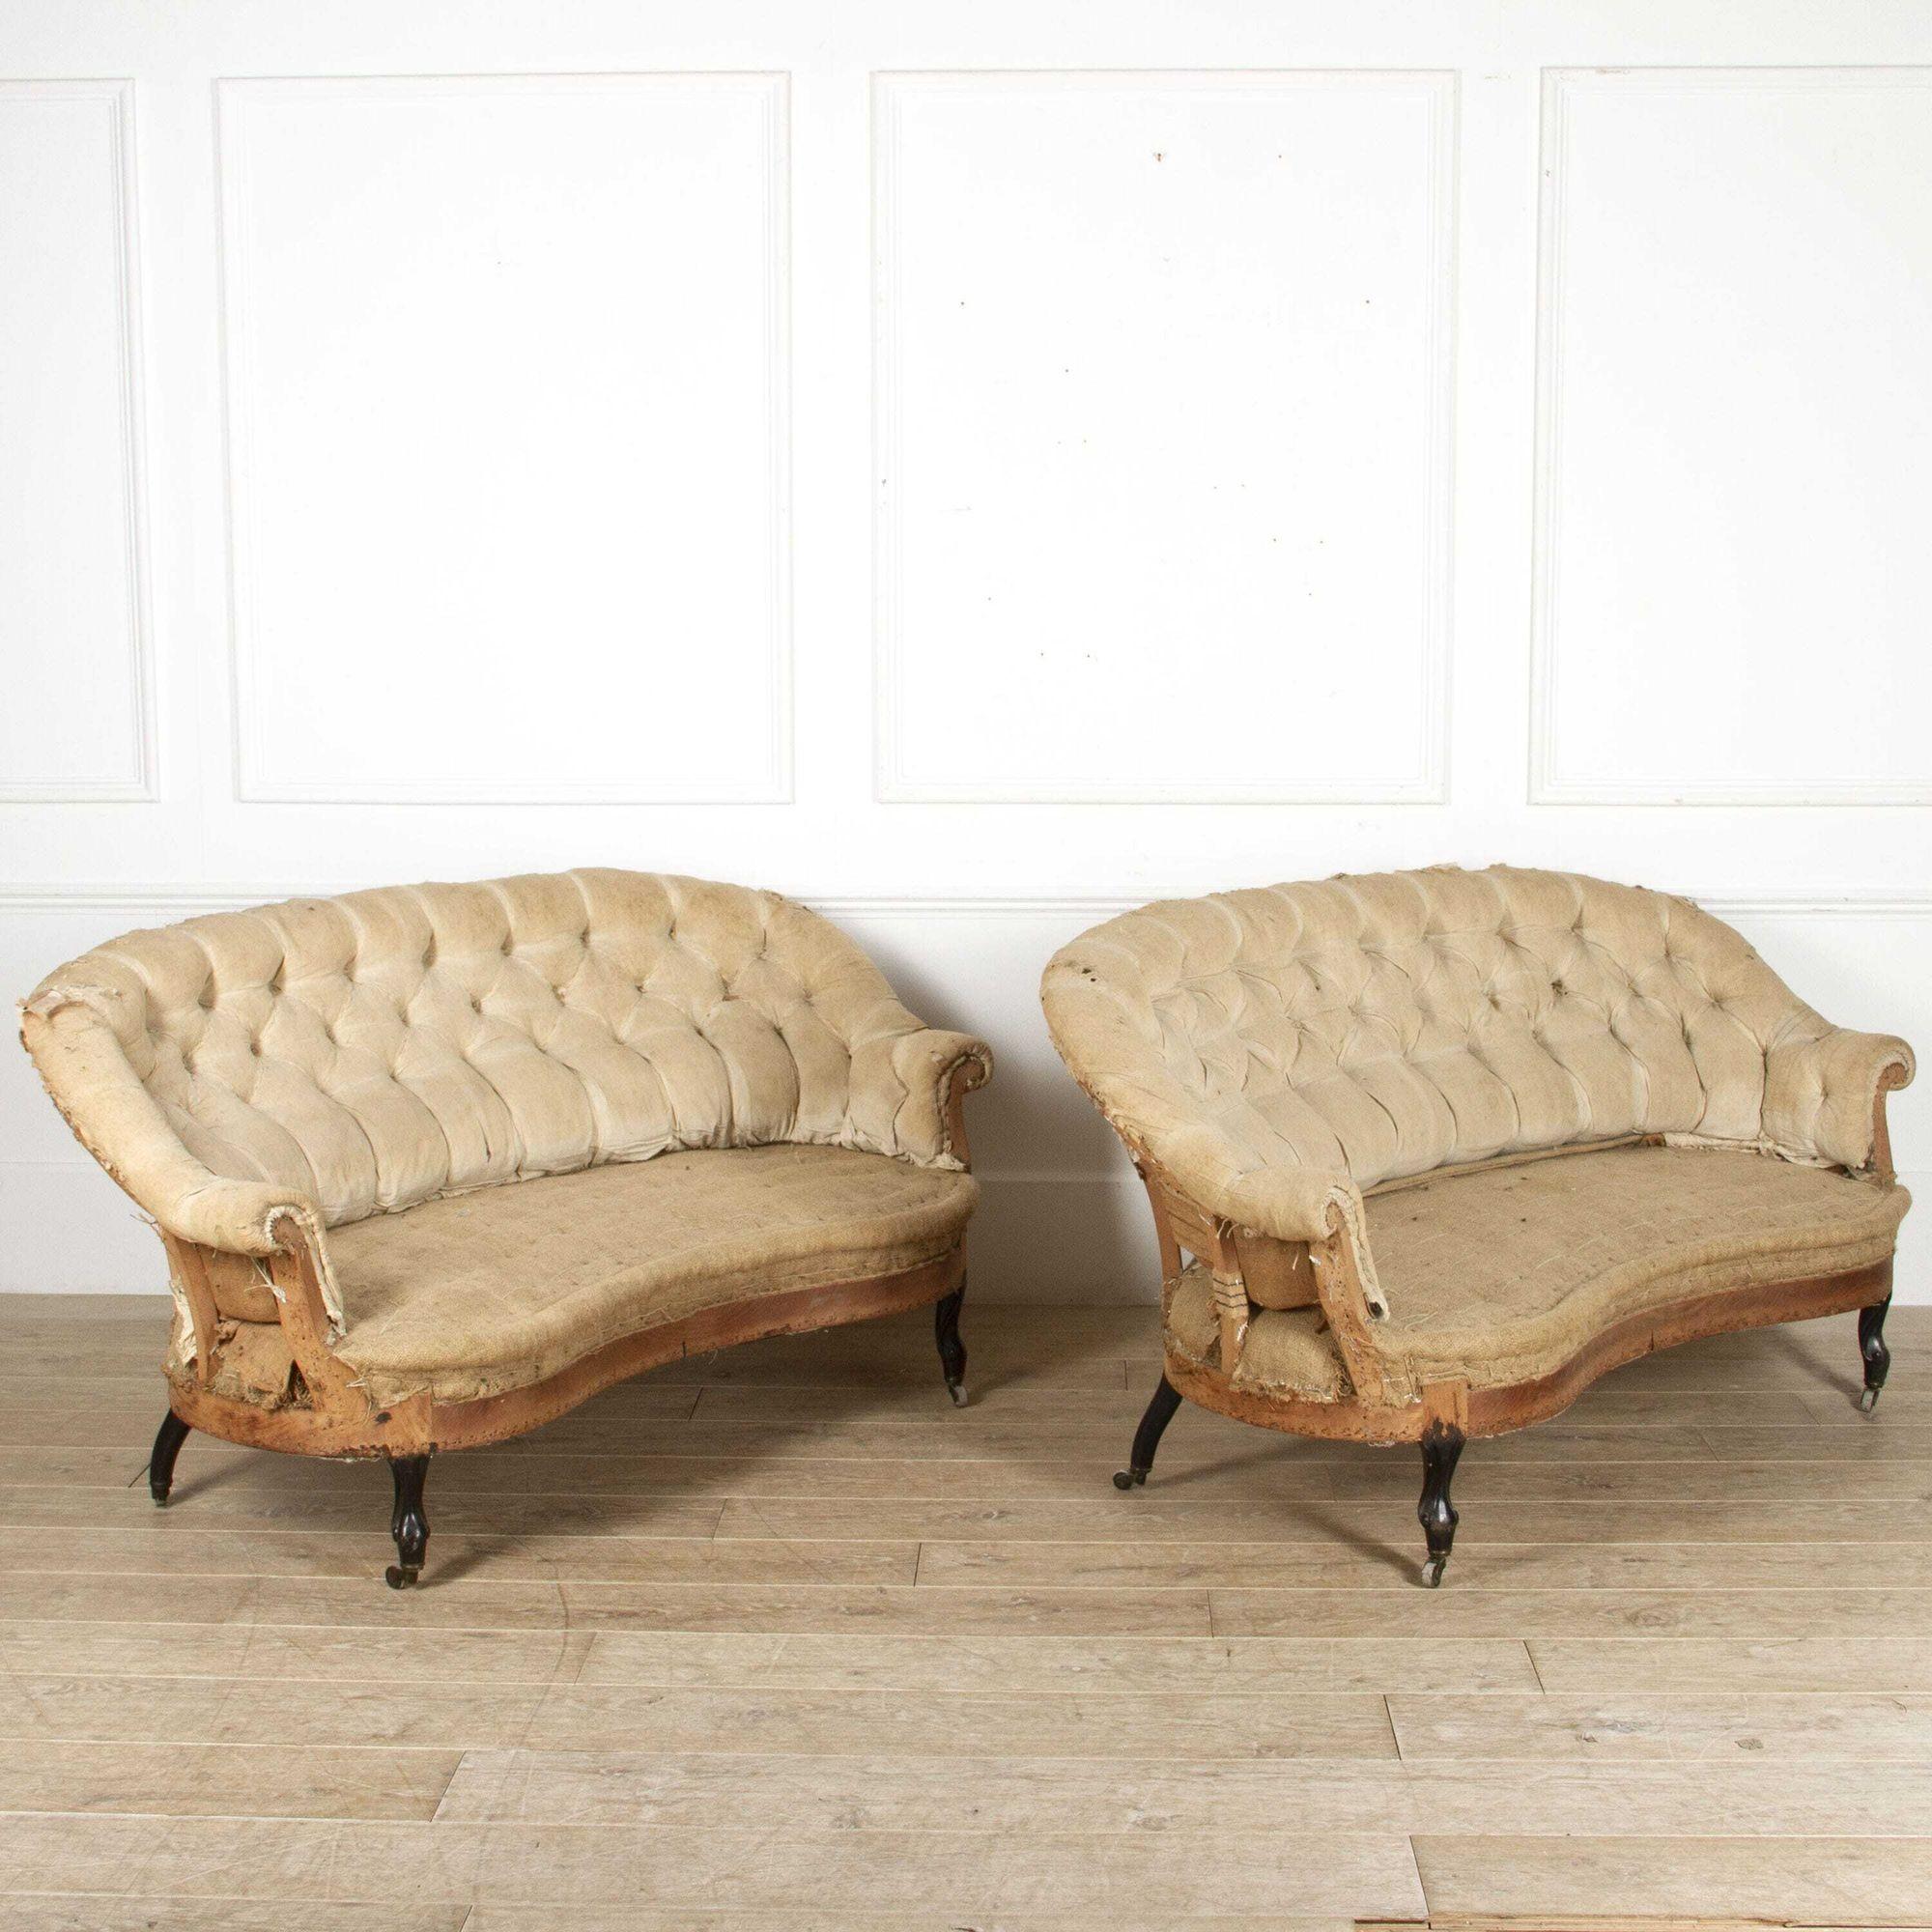 Wunderschönes Paar französischer Sofas im Stil von Napoleon III, um 1880.
Diese klassischen Sofas zeichnen sich durch einen elegant geformten Rahmen aus, zu dem auch die Original-Knopfrücken gehören. 
Sie sind beide von großer Form und Größe, was